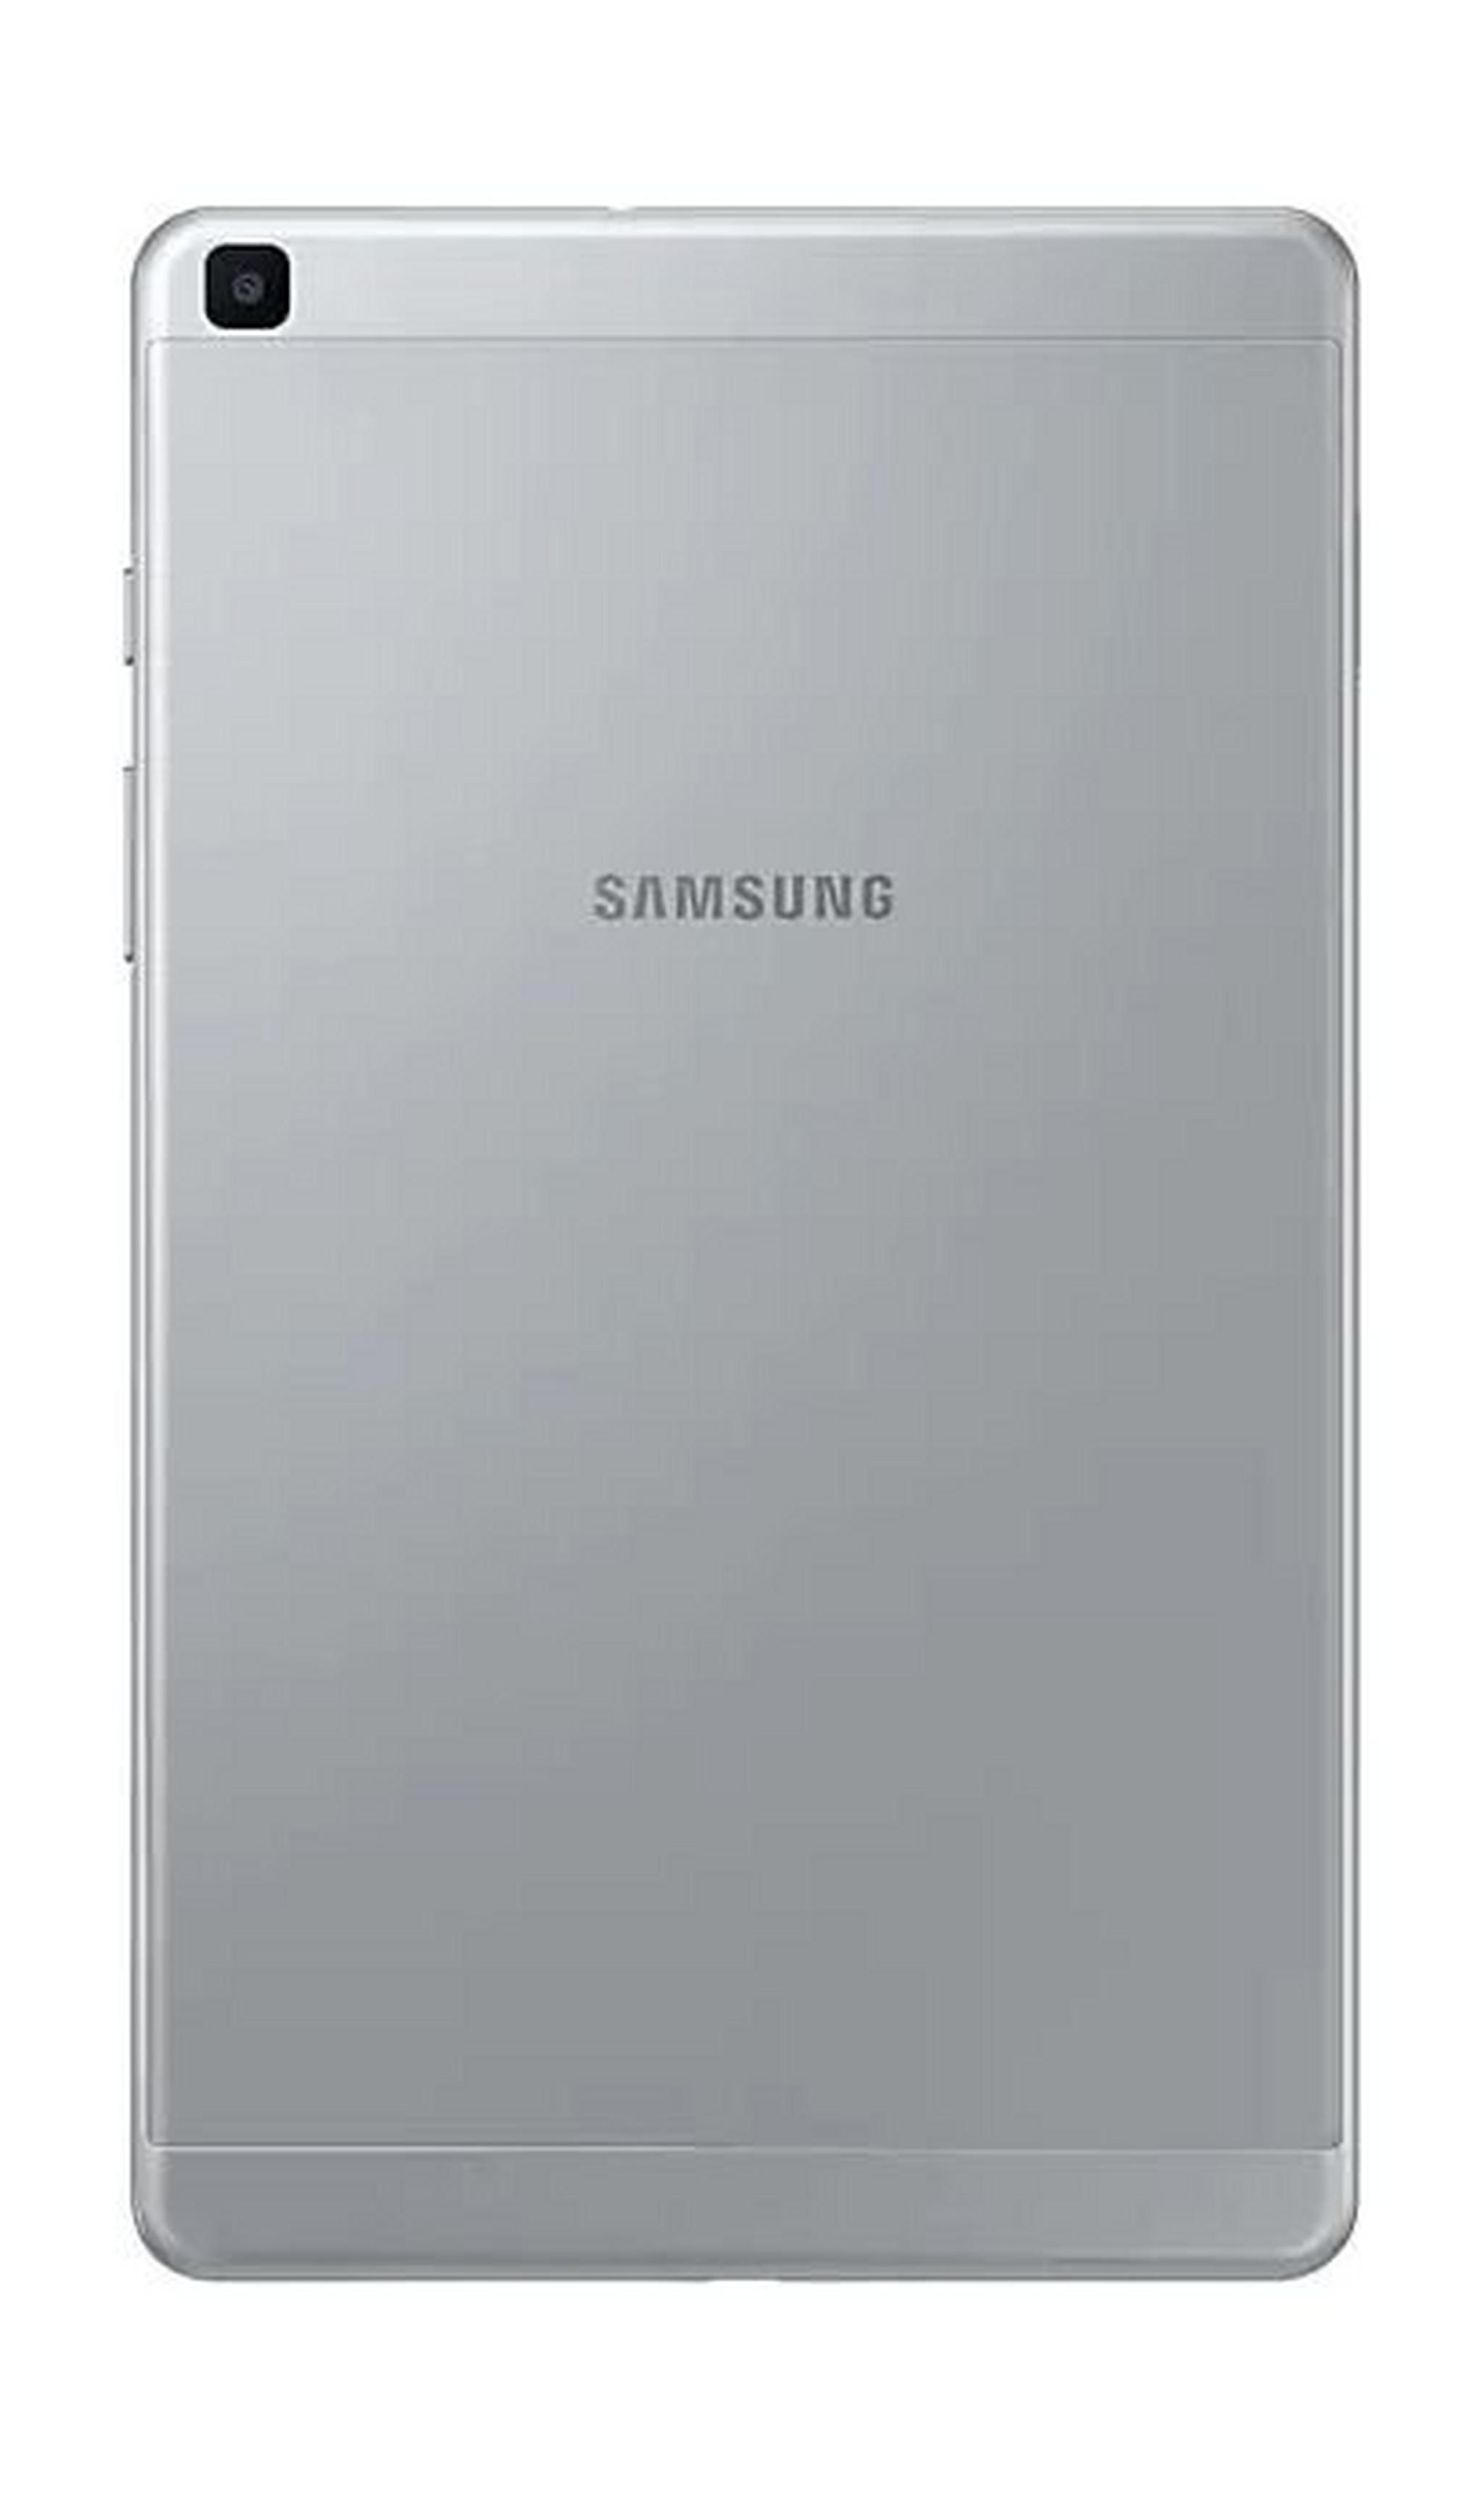 SAMSUNG Galaxy Tab A 2019 8-inch 32GB 4G LTE Tablet - Silver